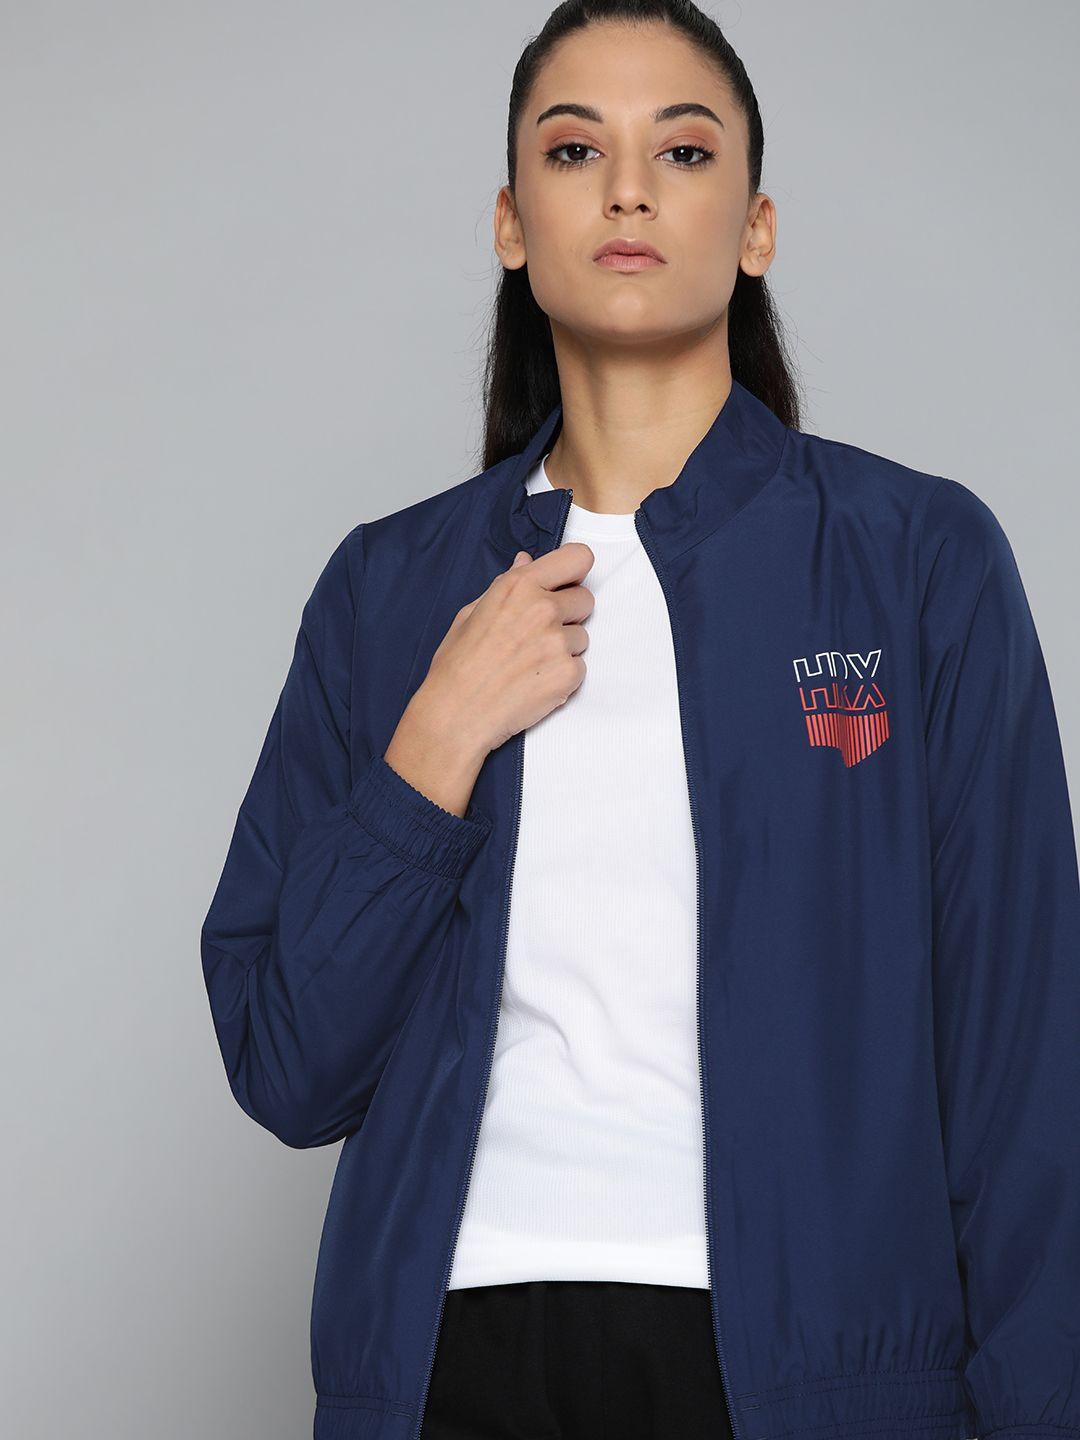 hrx by hrithik roshan women navy blue brand logo sporty jacket